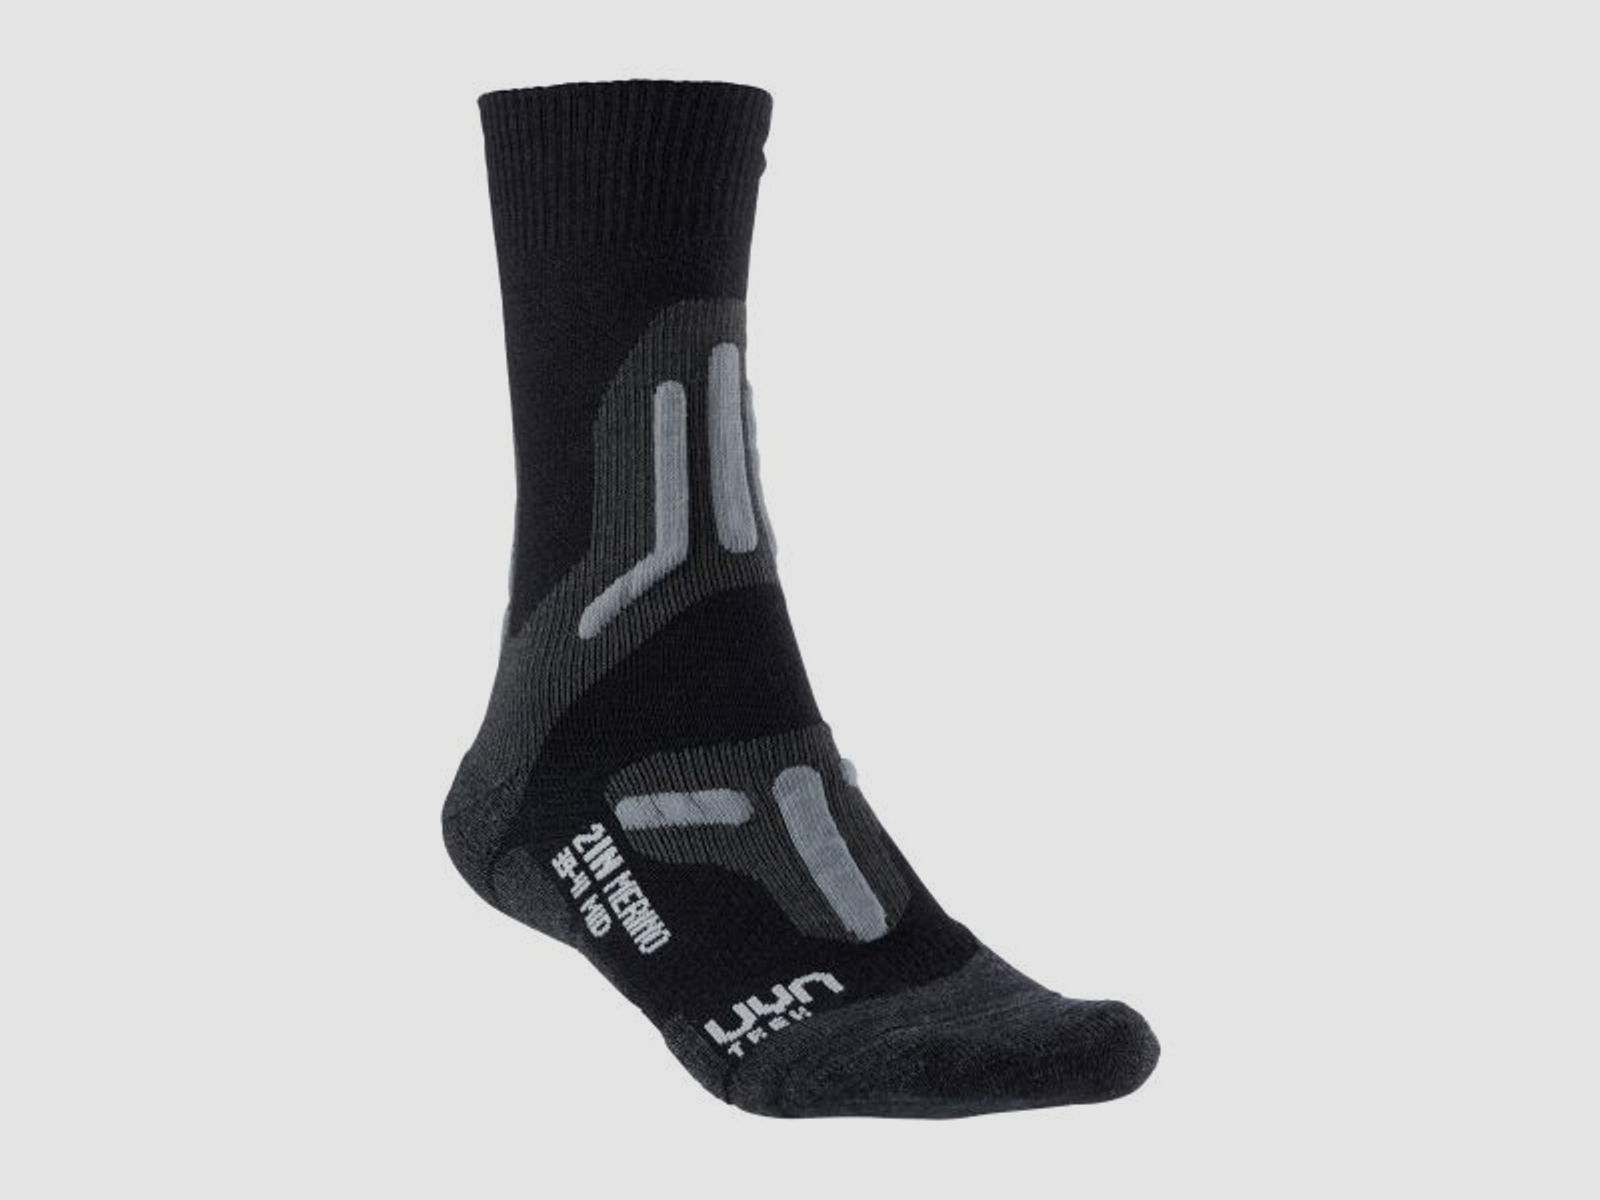 Uyn UYN Socken Trekking 2in Merino Mid Socks Männer schwarz grau